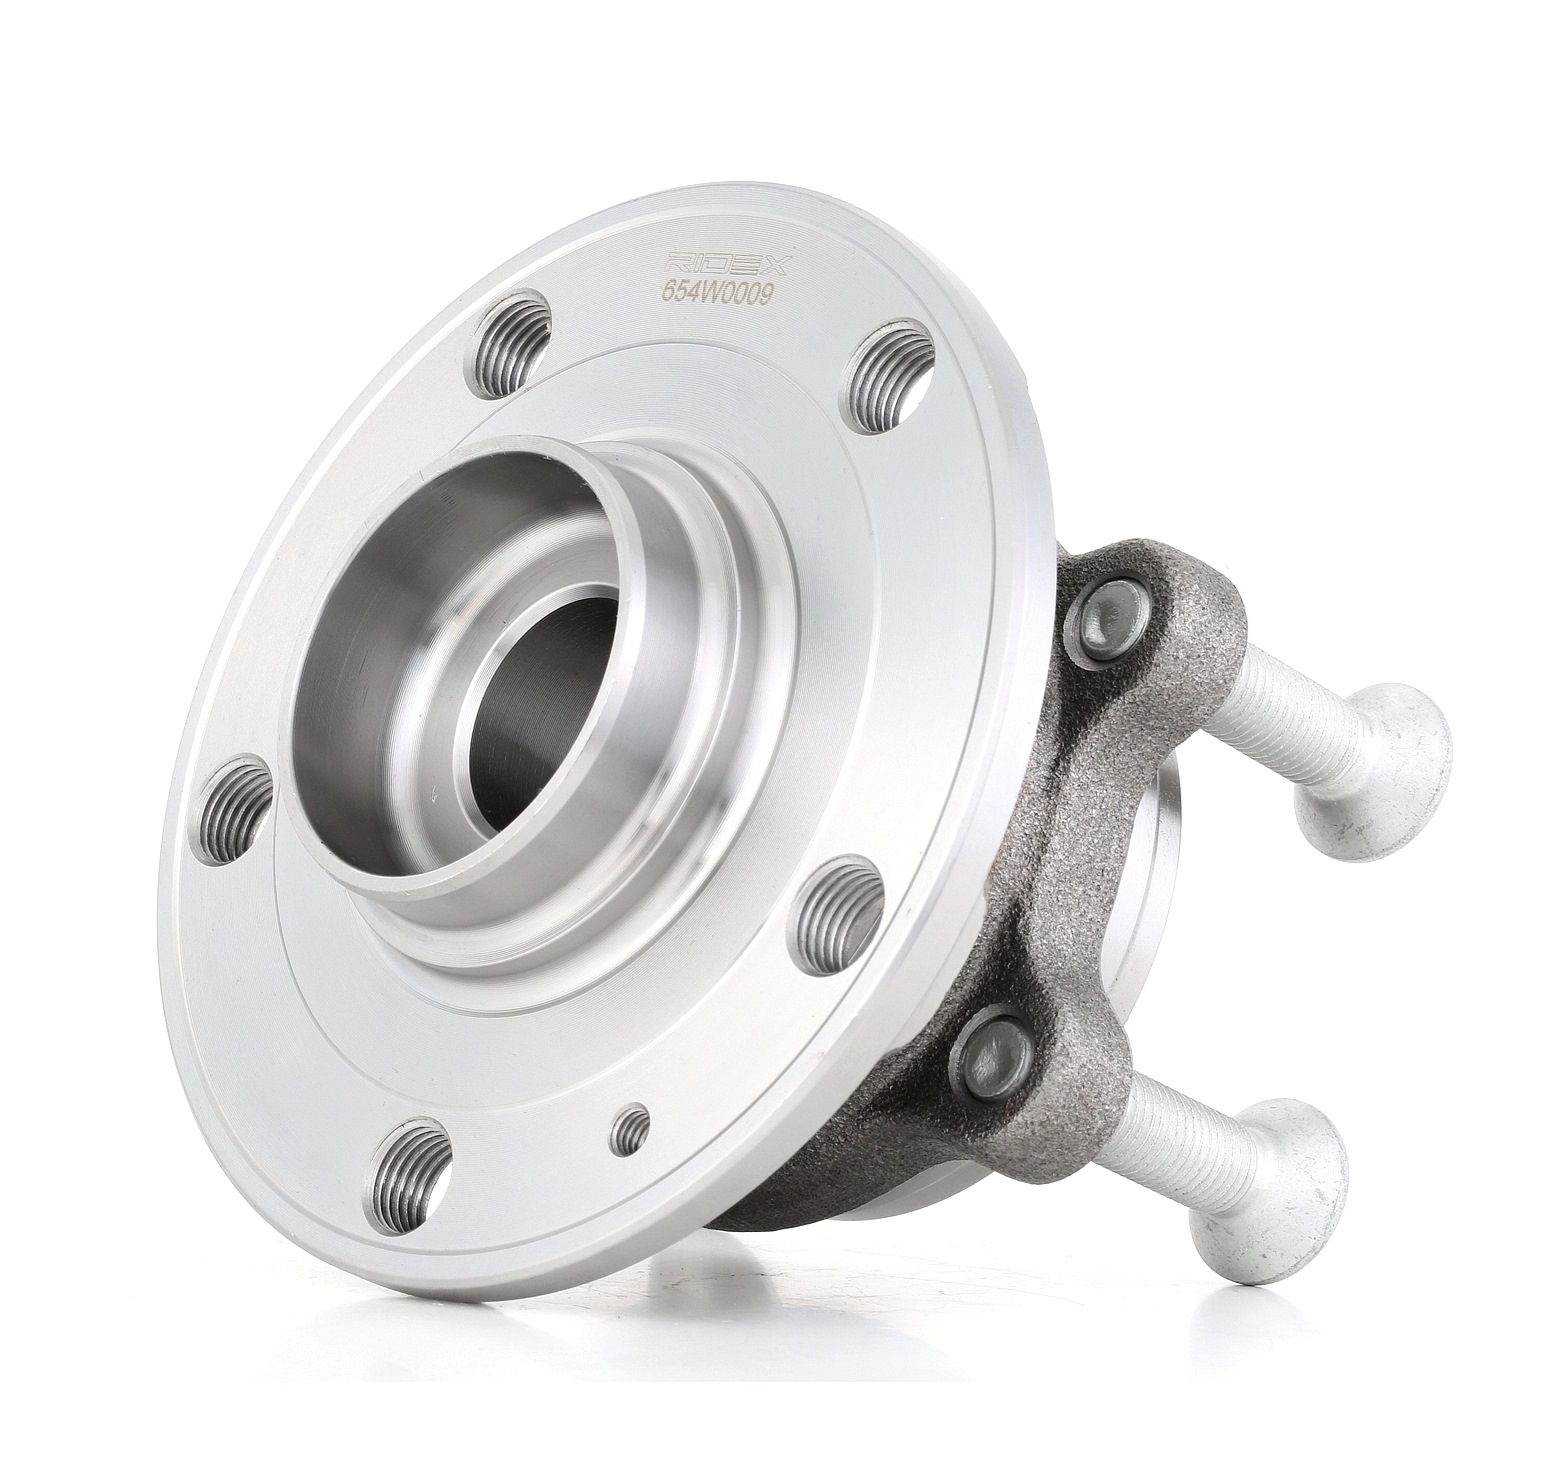 Acheter Kit de roulement de roue RIDEX 654W0009 - Roulements pièces détachées VOLKSWAGEN TOURAN en ligne